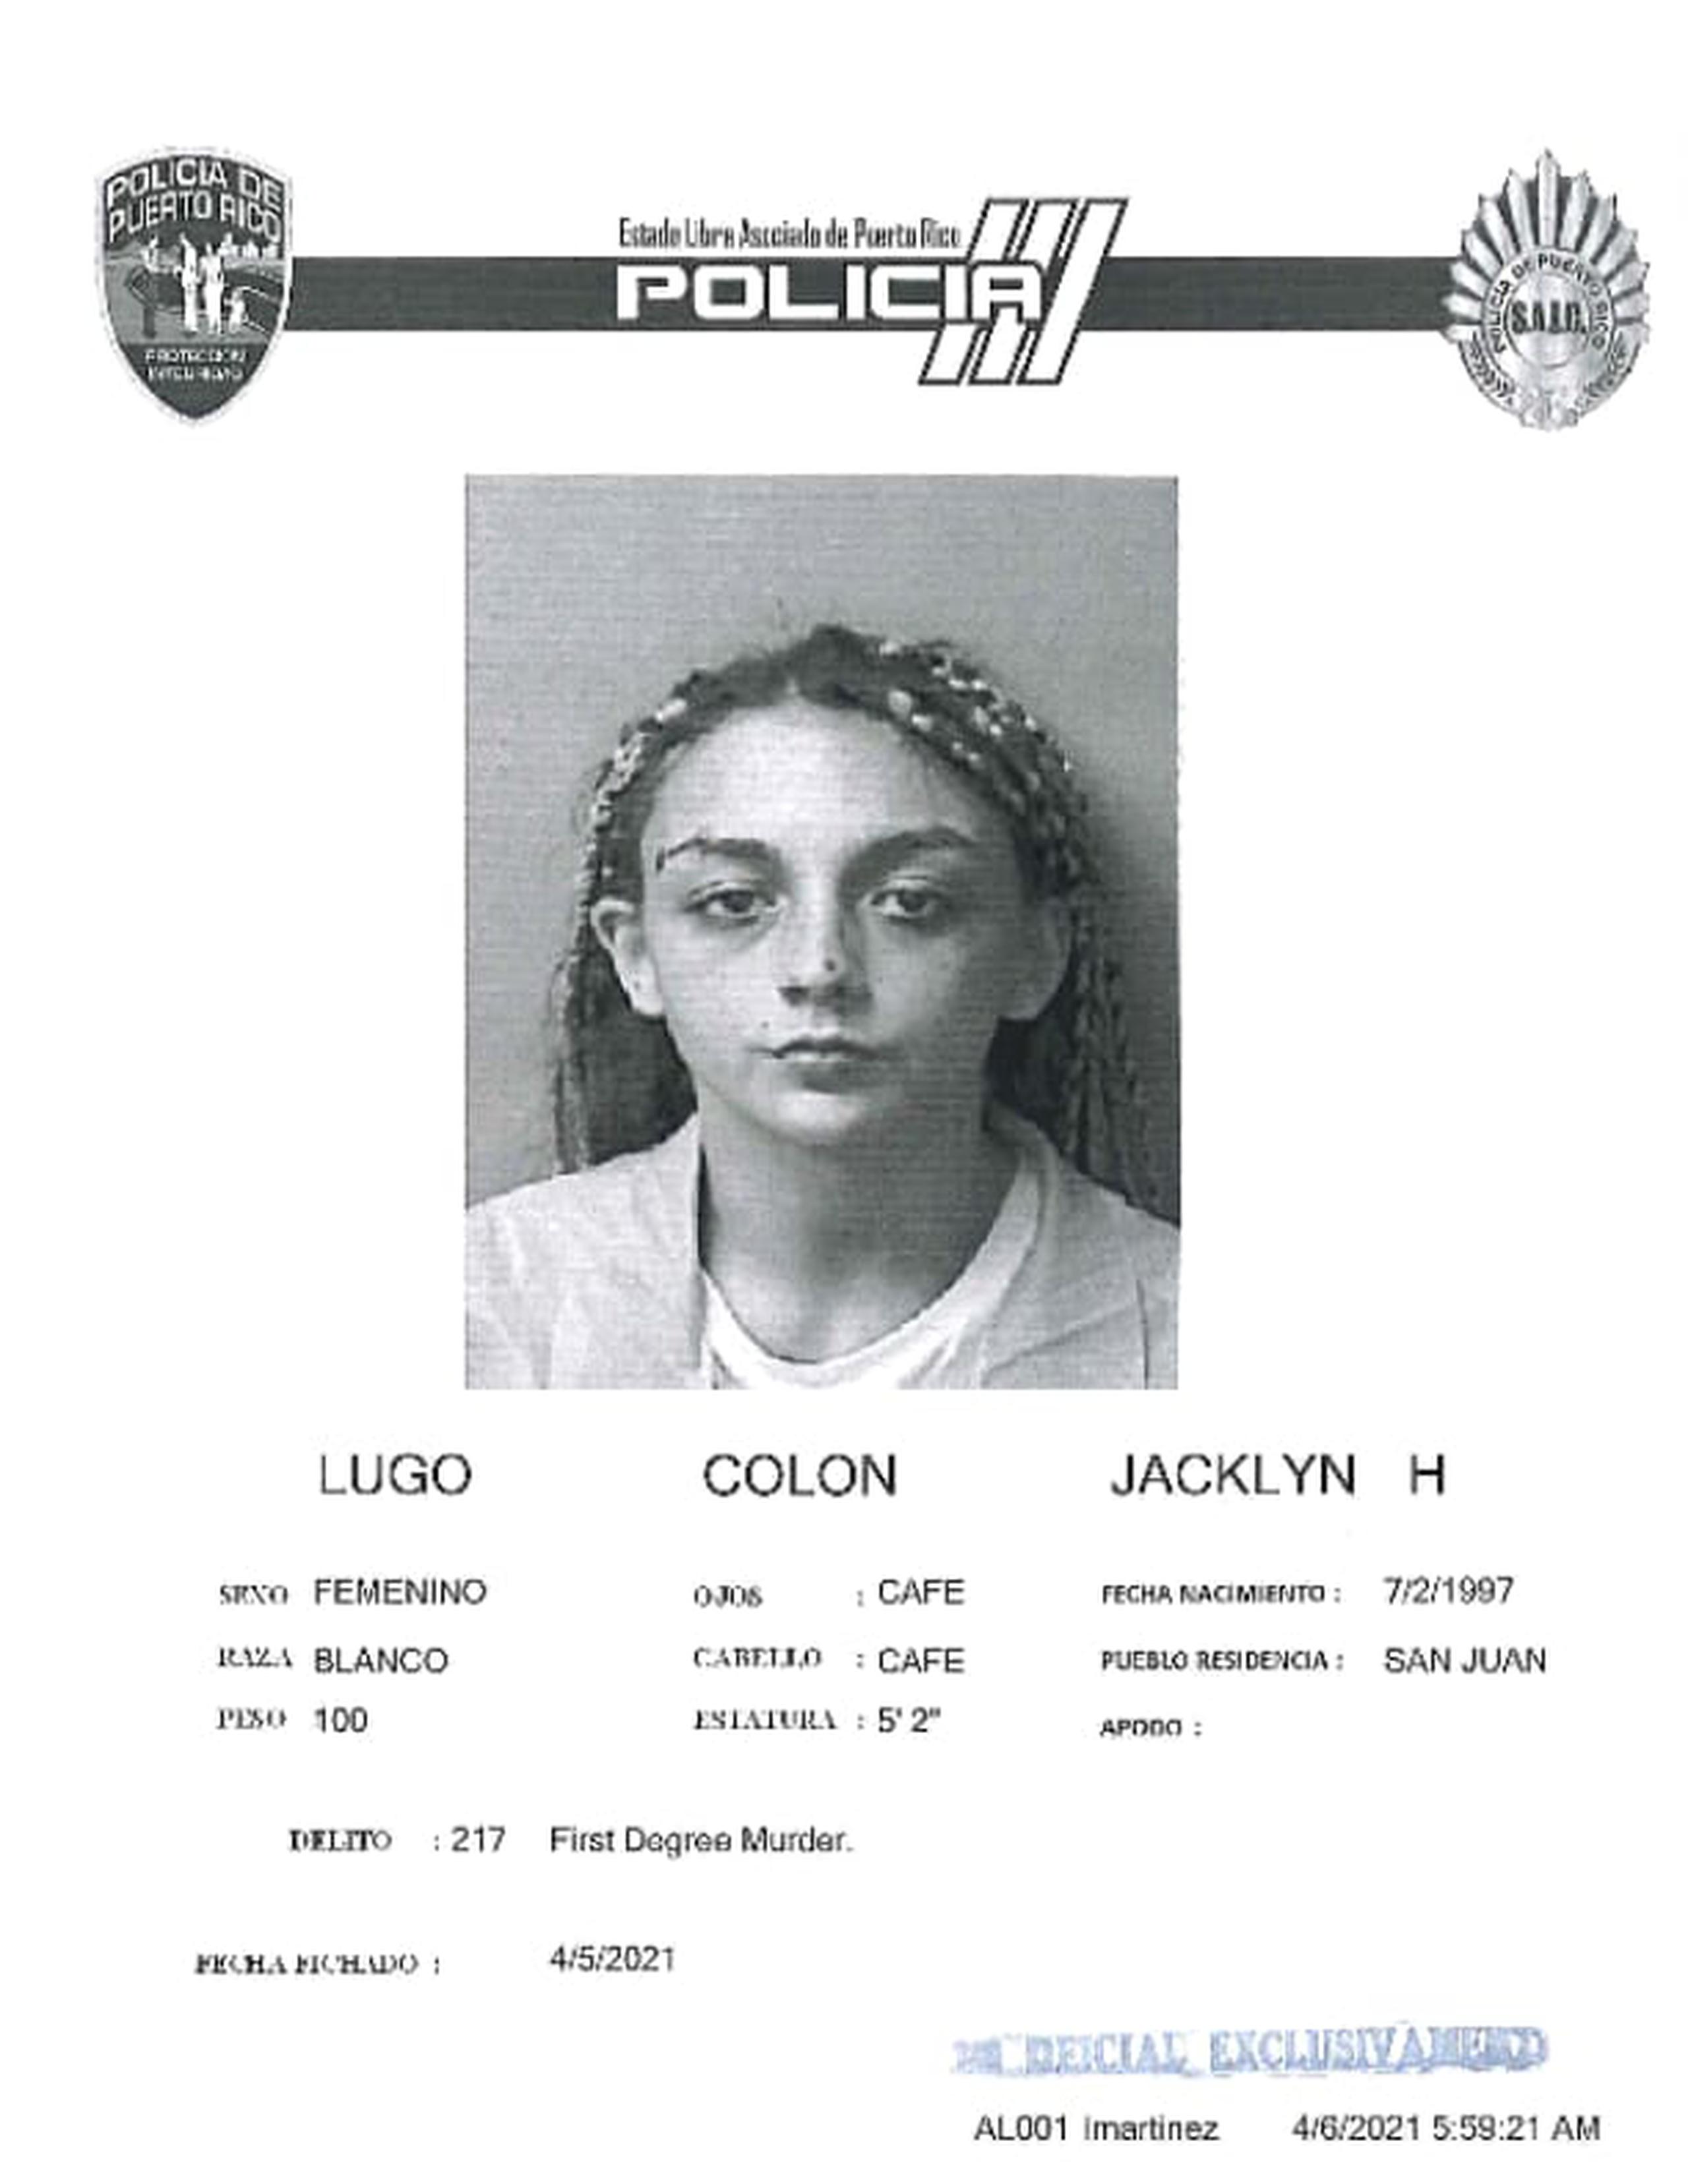 Jacklyn H. Lugo Colón, de 23 años fue ingresada en prisión junto a Juan M. Castillo Martínez, de 36 años, tras ser acusados por el crimen de una empleada del motel Yess, en Carolina.